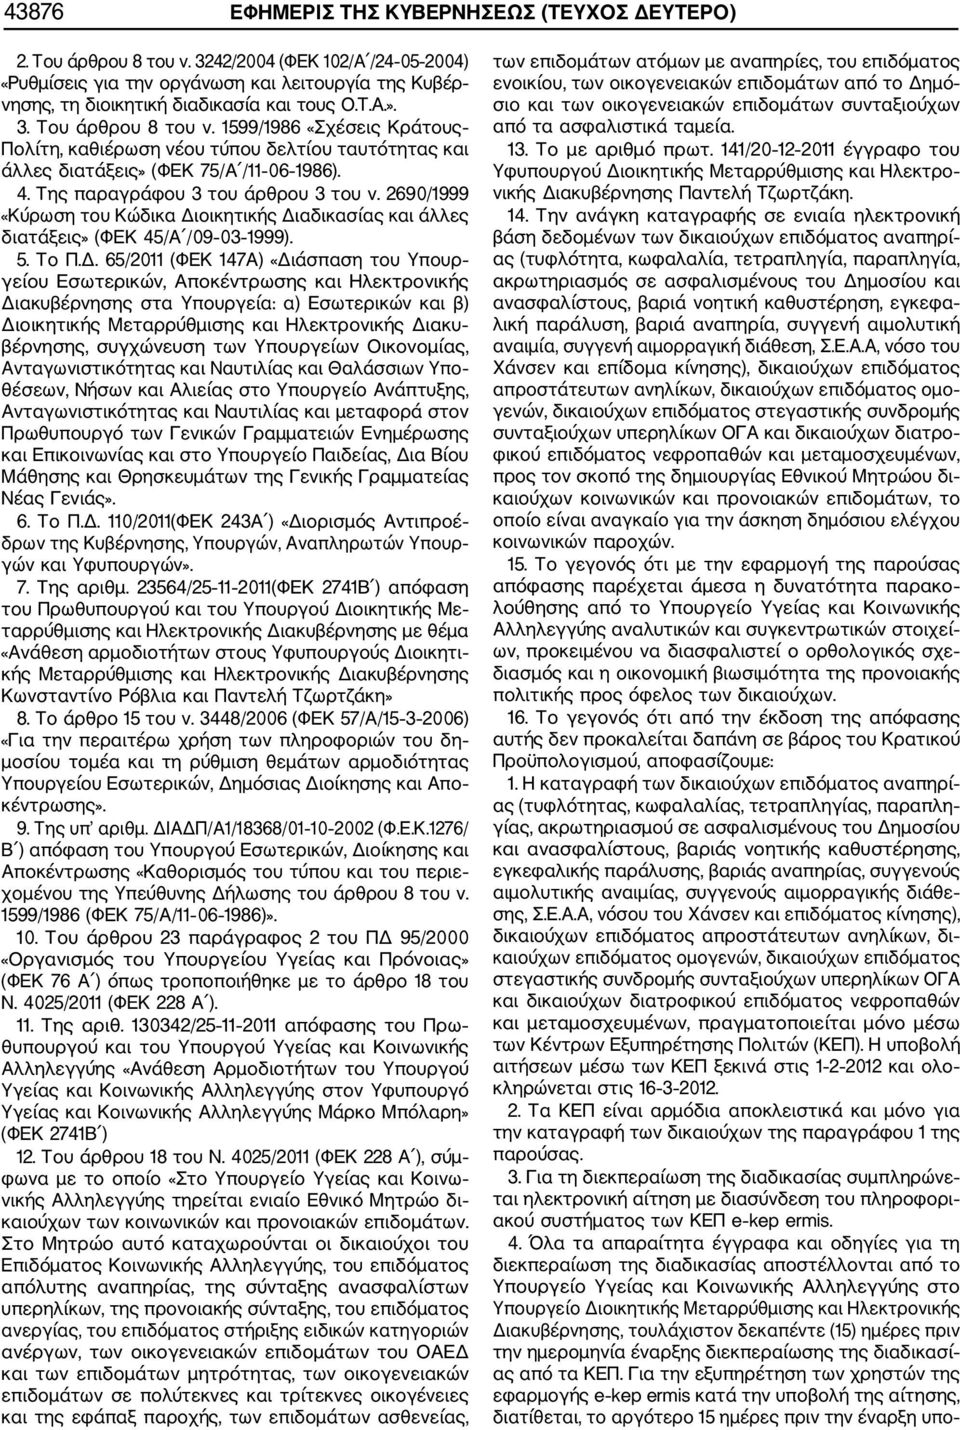 1599/1986 «Σχέσεις Κράτους Πολίτη, καθιέρωση νέου τύπου δελτίου ταυτότητας και άλλες διατάξεις» (ΦΕΚ 75/Α /11 06 1986). 4. Της παραγράφου 3 του άρθρου 3 του ν.